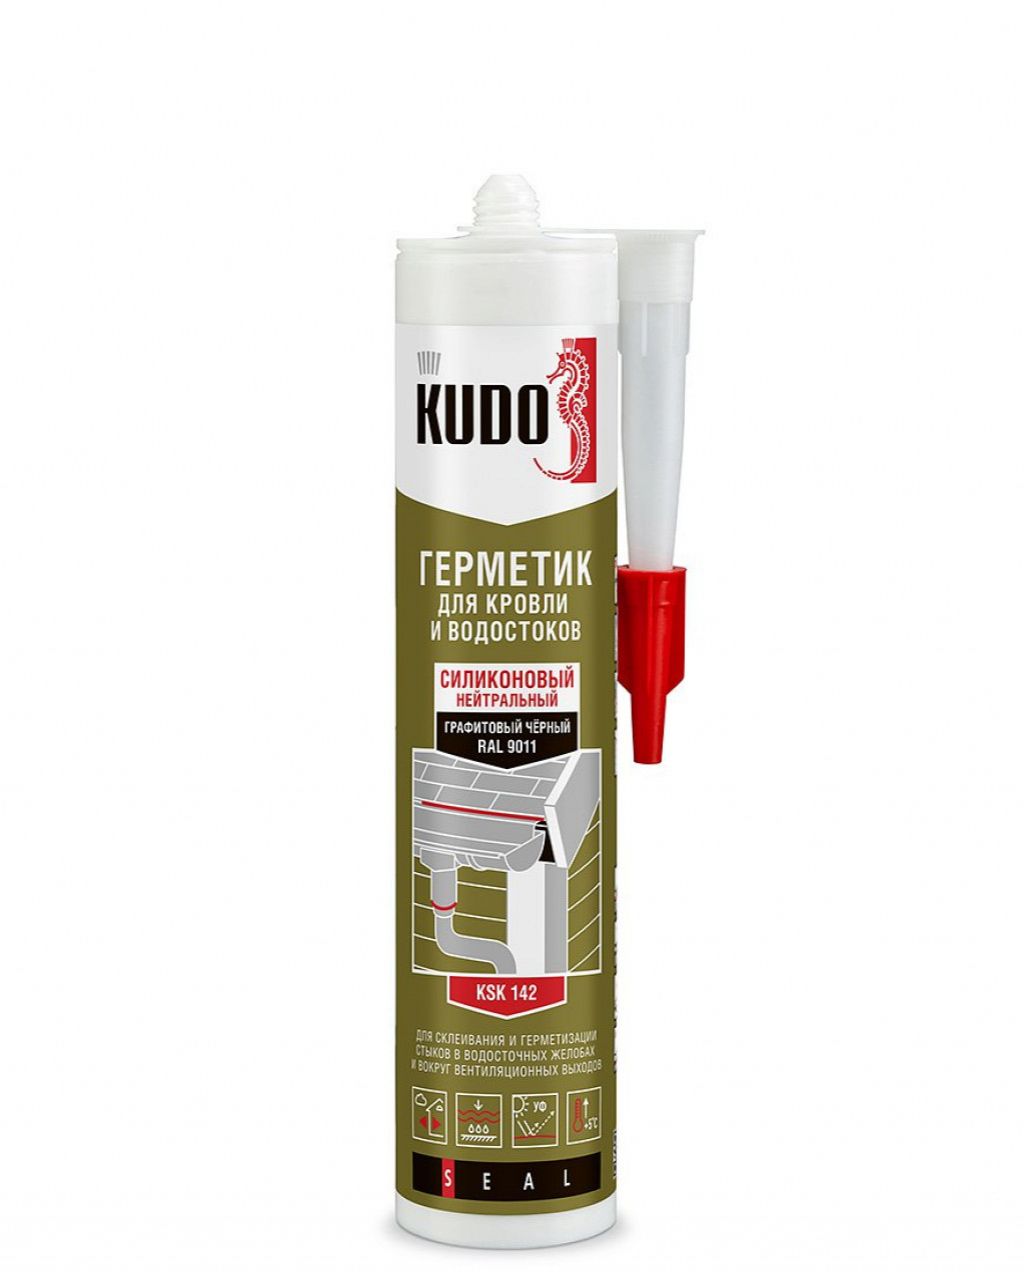 Герметик KUDO KSK-142 силиконовый для кровли черный  280мл  KUDO